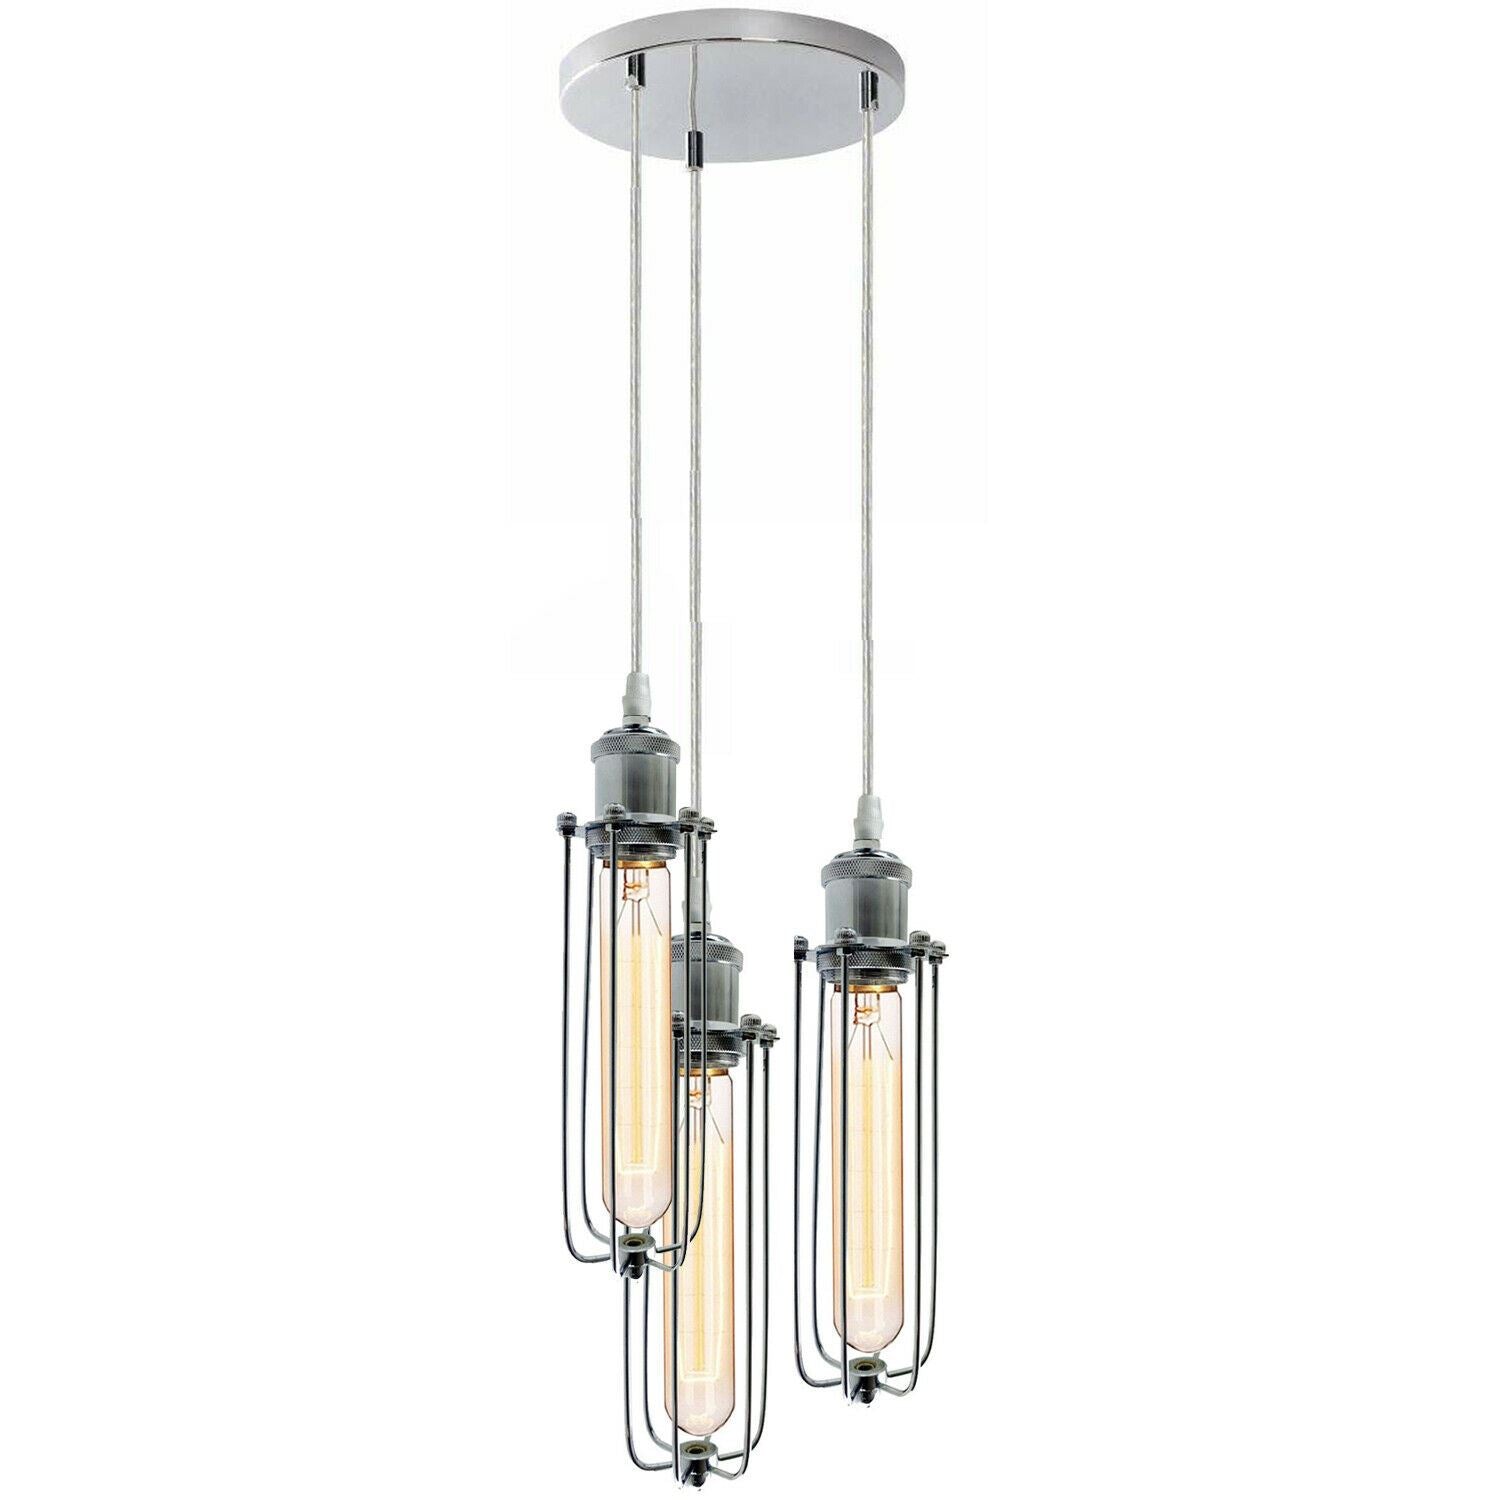 3 Way Cluster Hanging Ceiling Pendant Light E27 Chrome Light Fitting Lamp Kit~1353 - LEDSone UK Ltd